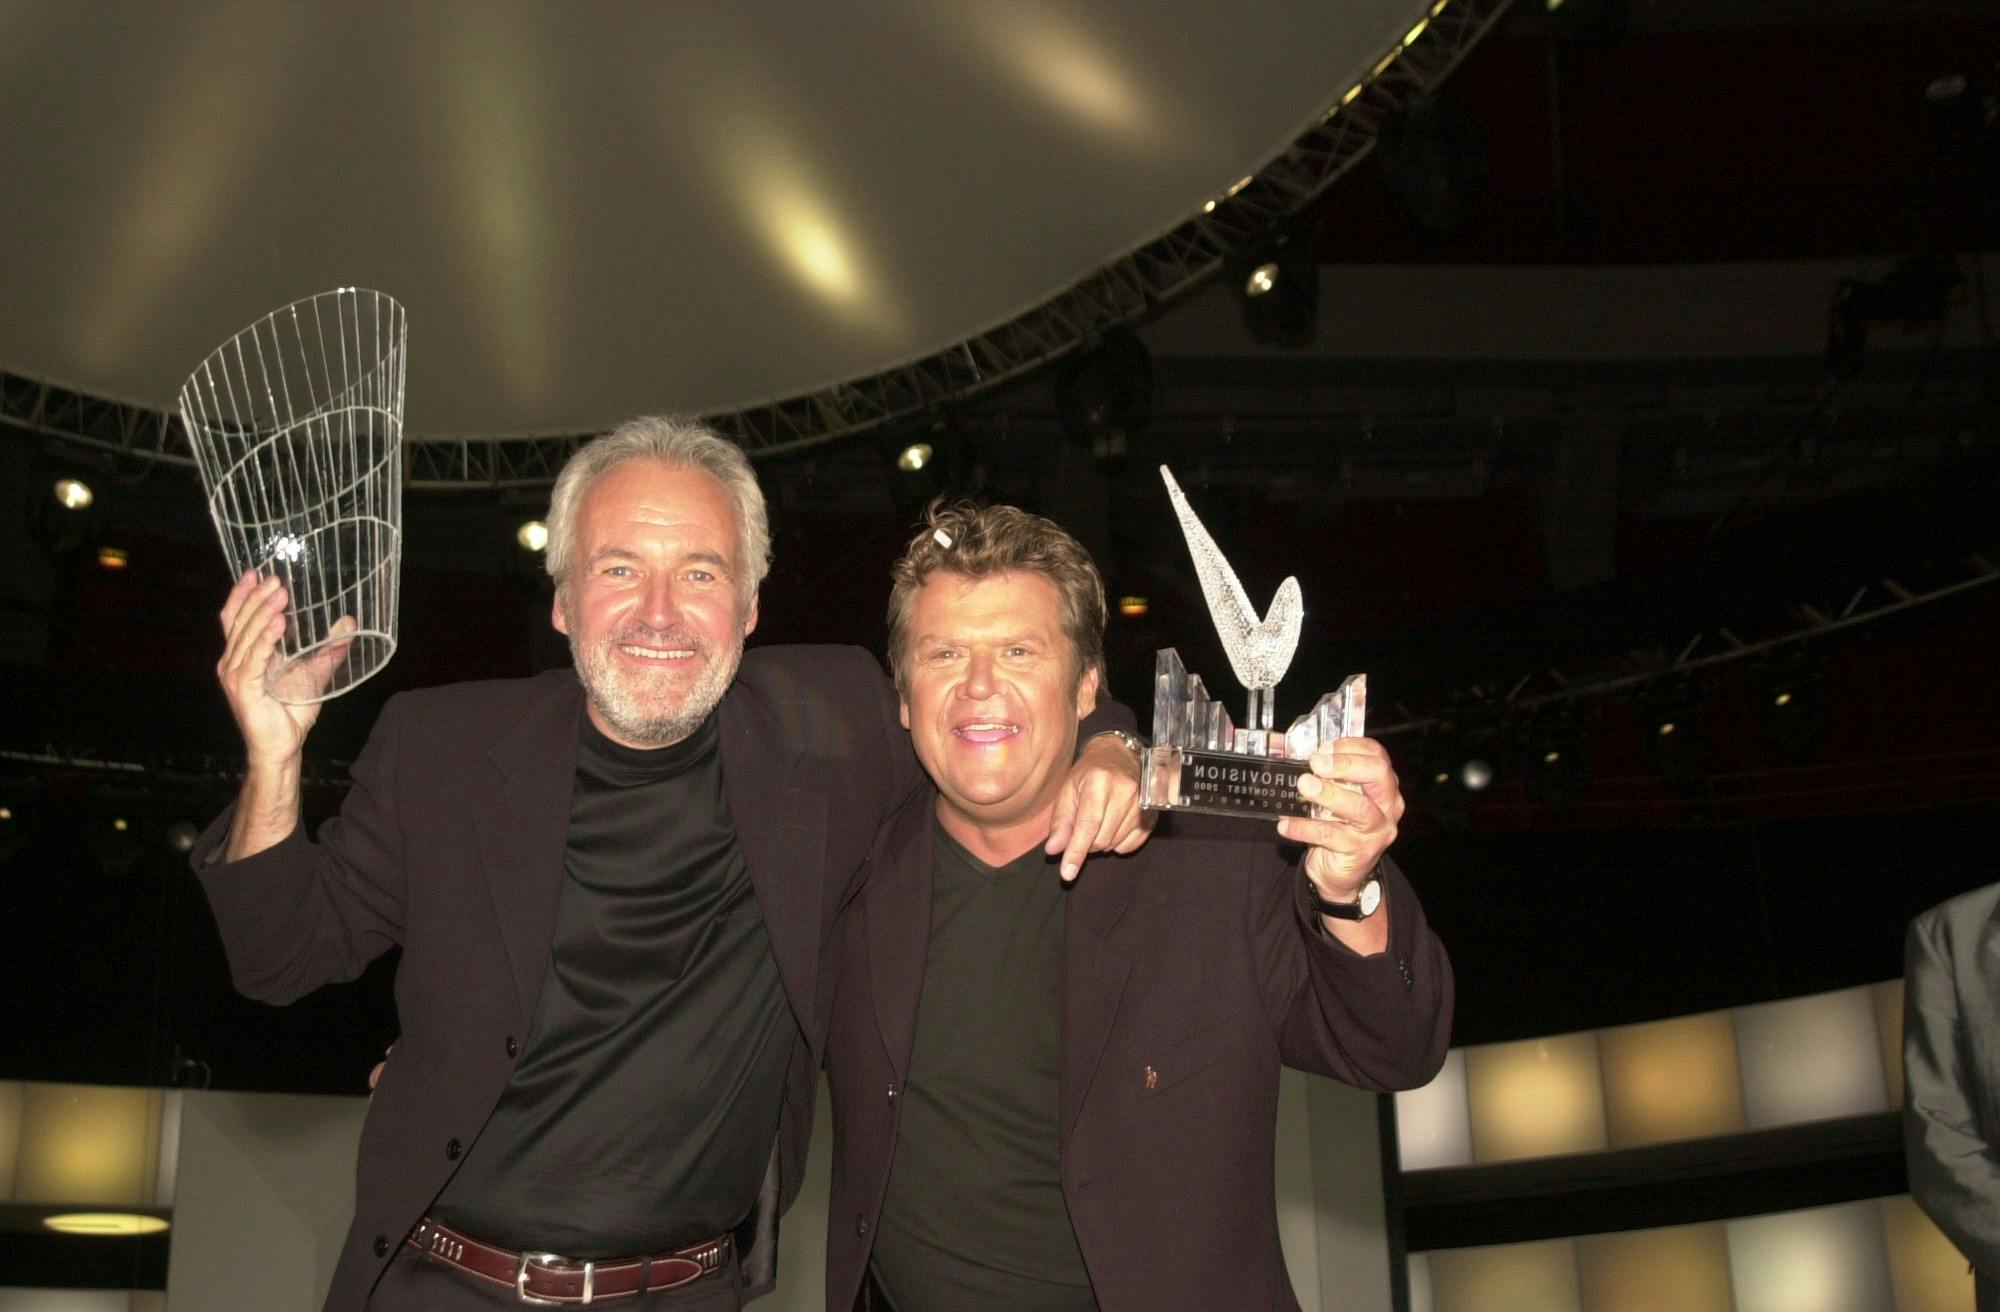 Brødrene Olsen satte Danmark på Europakortet, da de vandt Eurovision med sangen ”Fly on the Wings of Love” i 2000. Danskerne var stolte og har siden flittigt sunget med på kærlighedssangen.